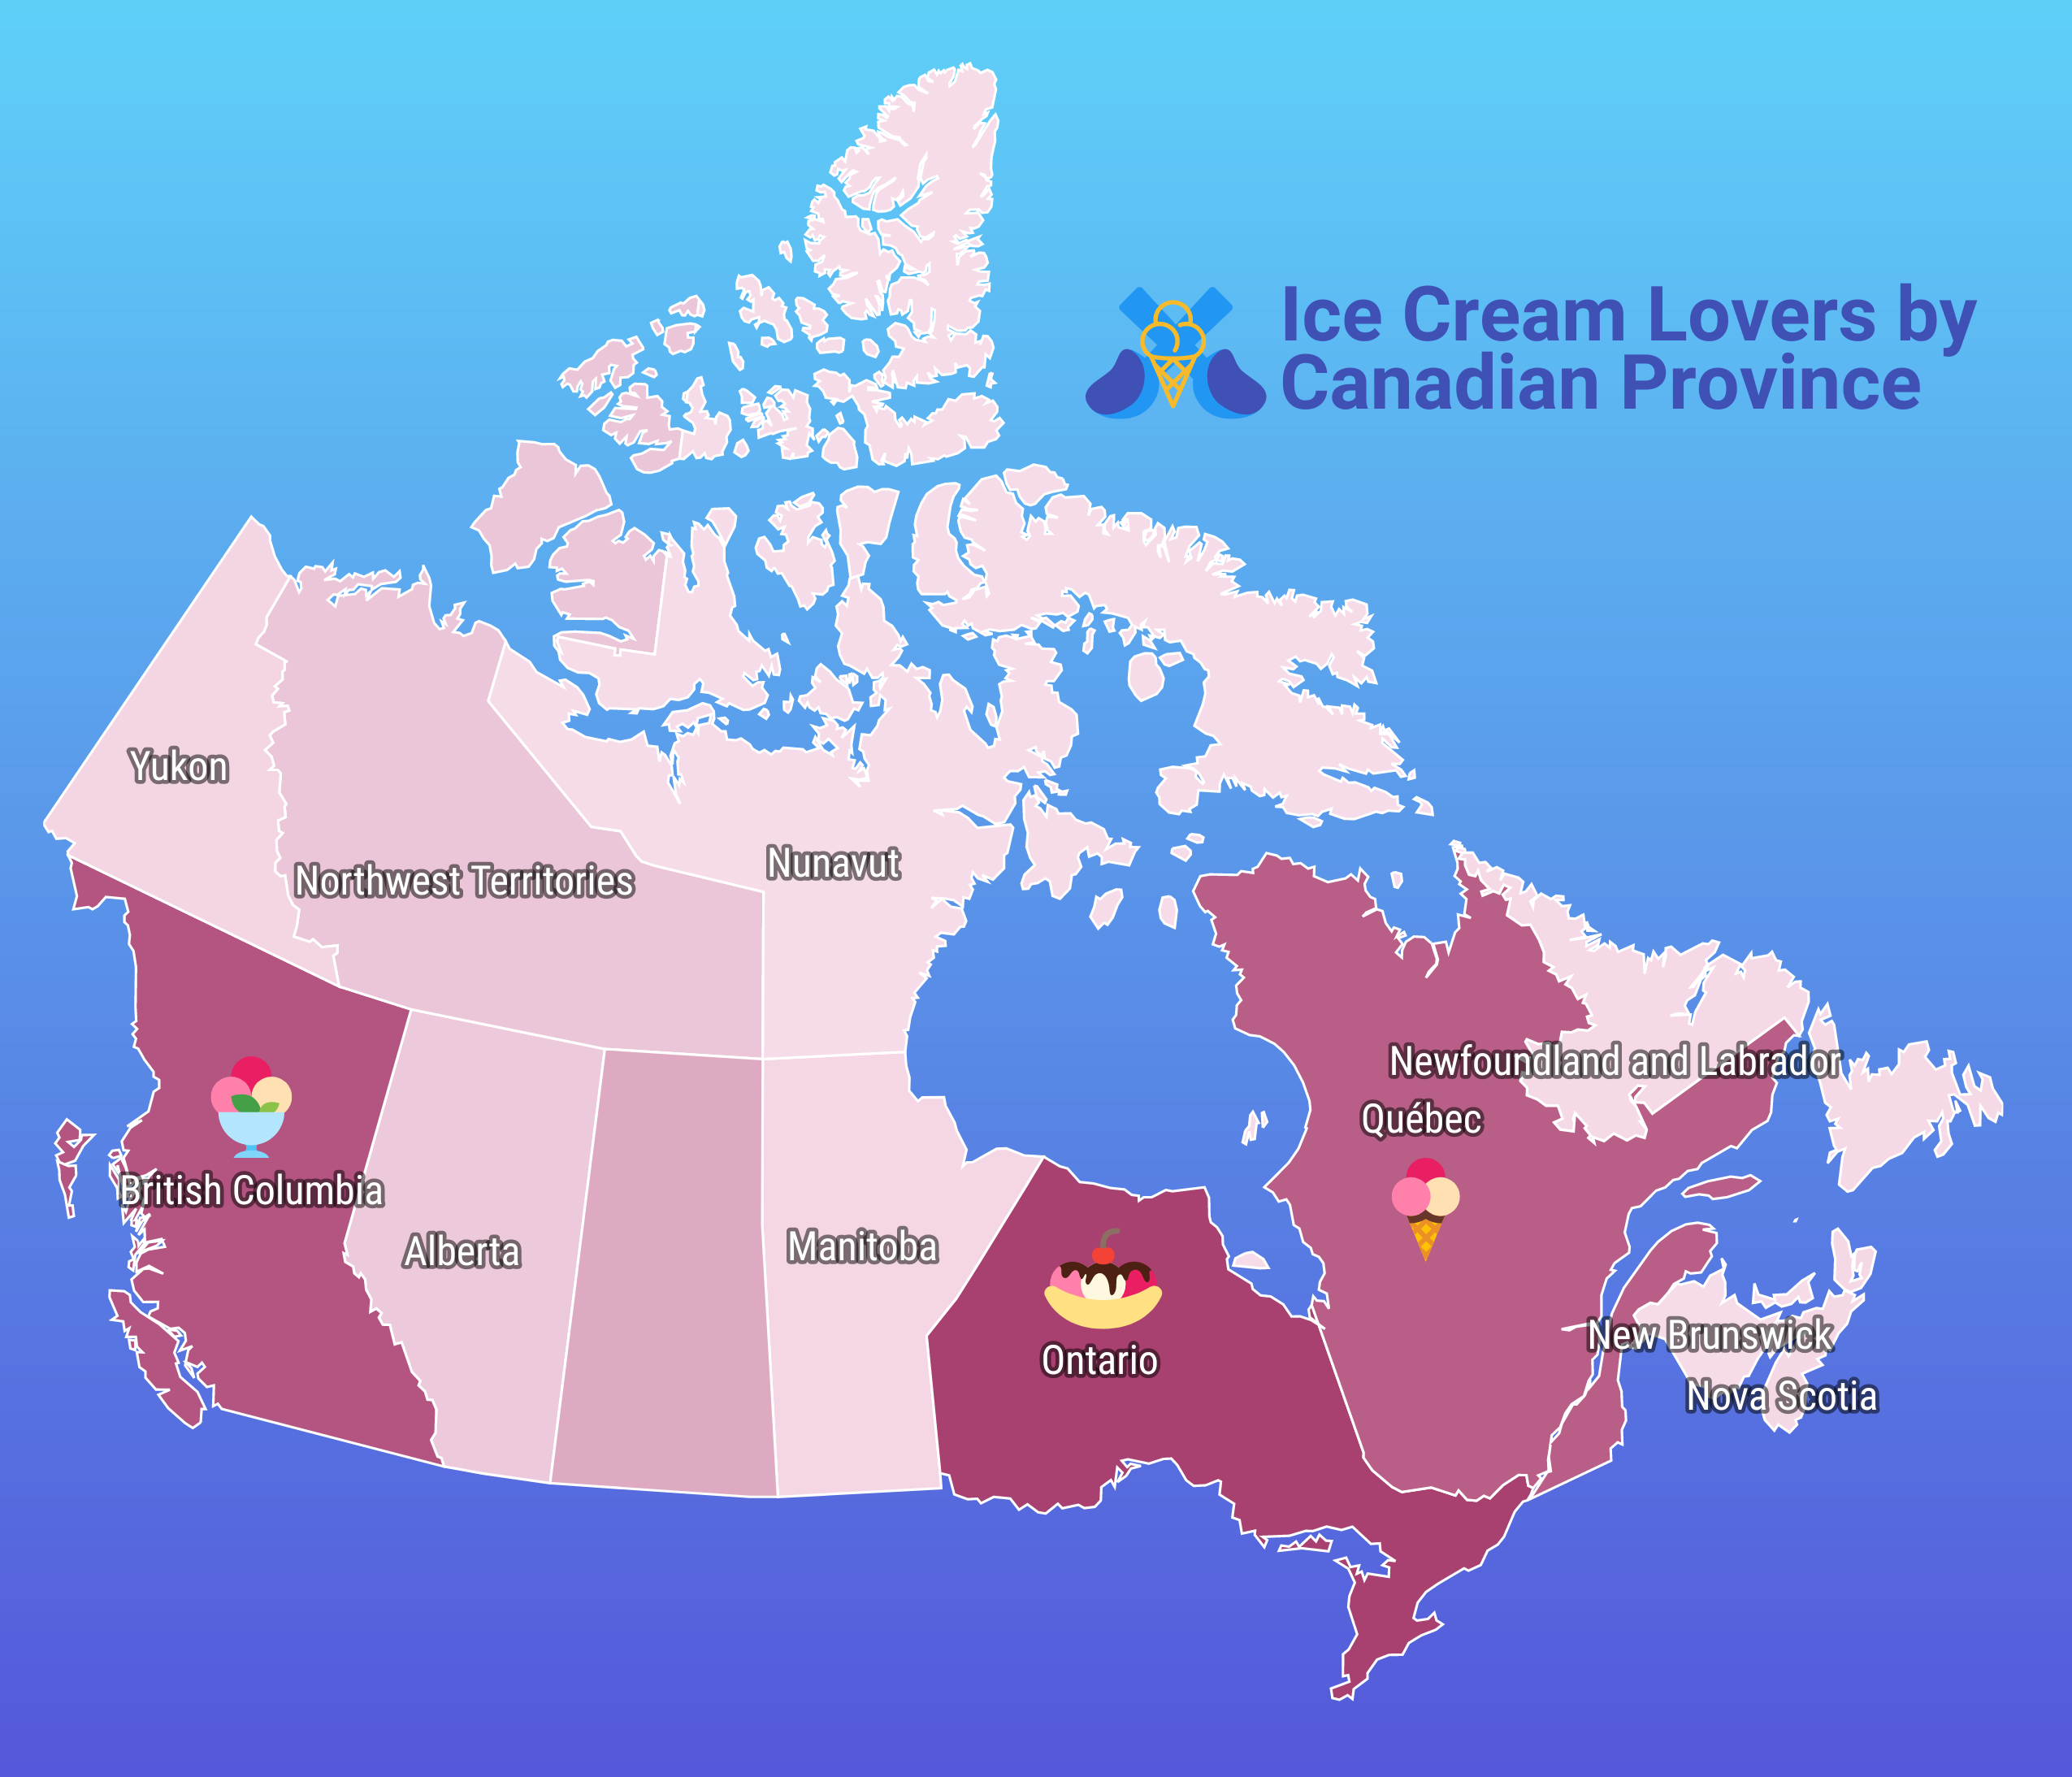 Um mapa coroplético do Canadá intitulado 'Ice Cream Lovers by Canadian Province'.  Os nomes das províncias aparecem sobre cada uma em texto branco contornado em preto, e as próprias províncias são coloridas em tons diferentes em um gradiente de rosa escuro a rosa claro.  As províncias de cores mais escuras têm ícones de casquinhas de sorvete e sundaes.  O fundo é um gradiente de azul claro a escuro.